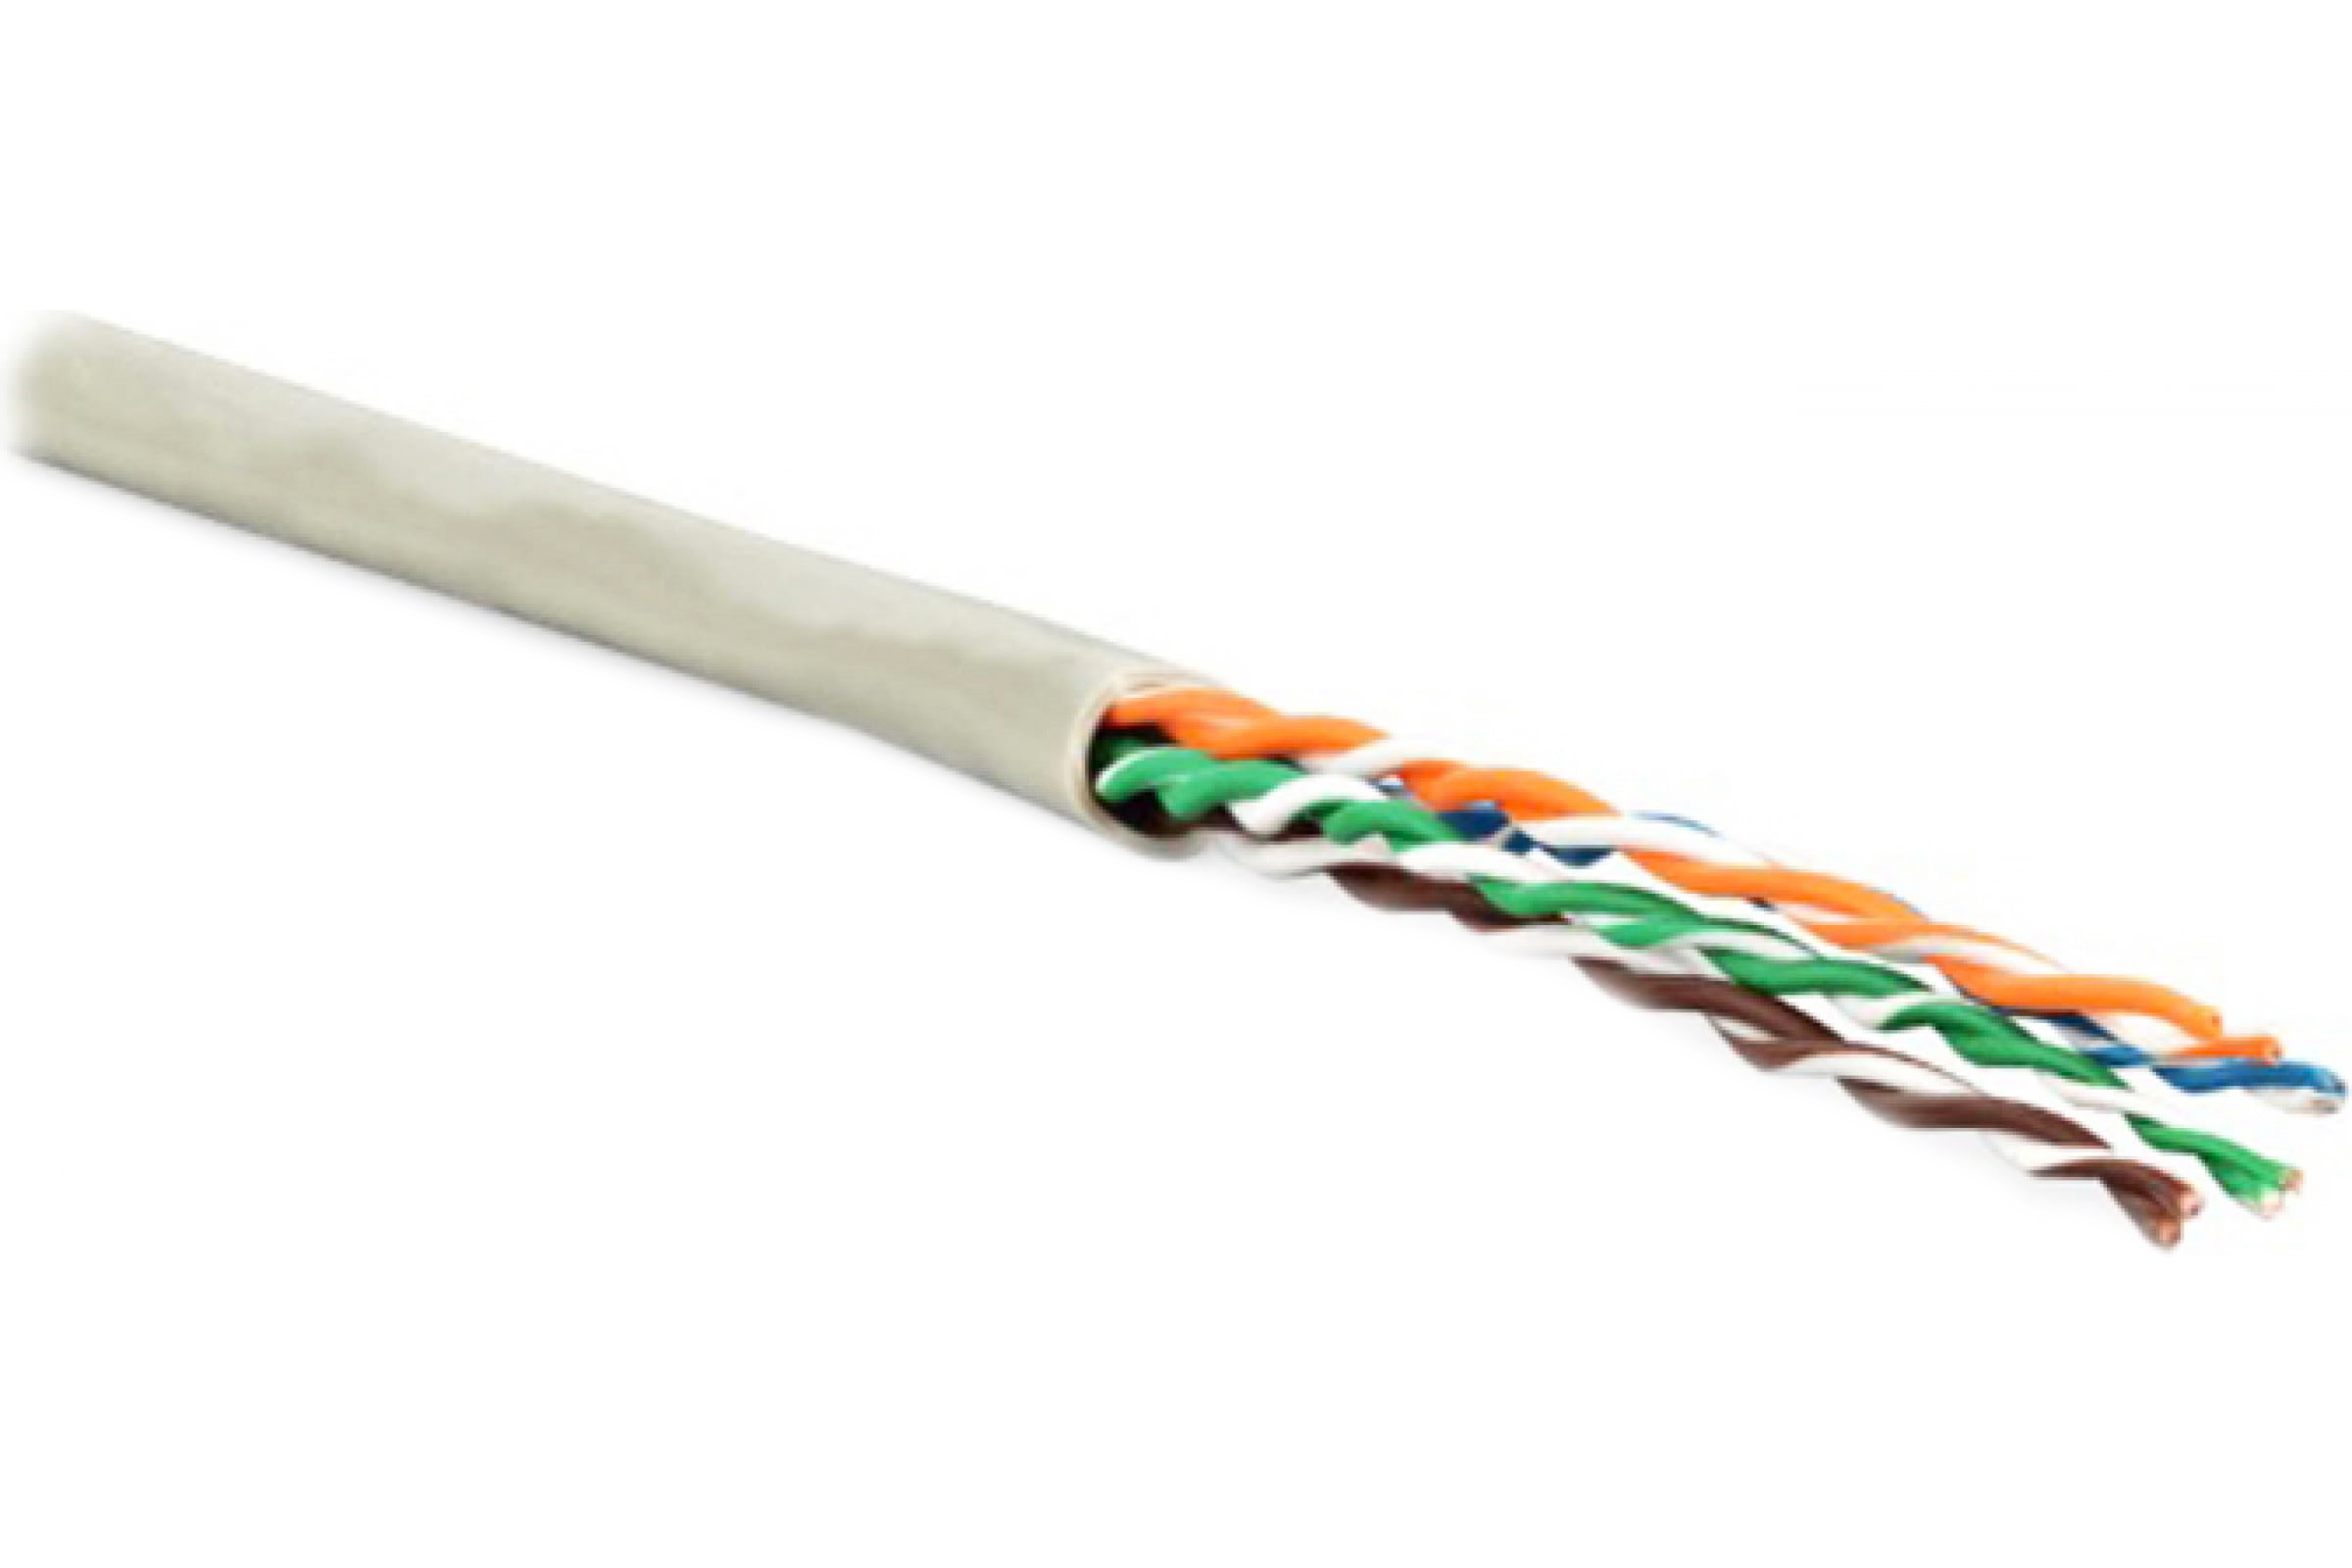 Кабель Hyperline кабель сетевой без разъемов 100м (243616) кабель hyperline кабель сетевой без разъемов 500м 236290